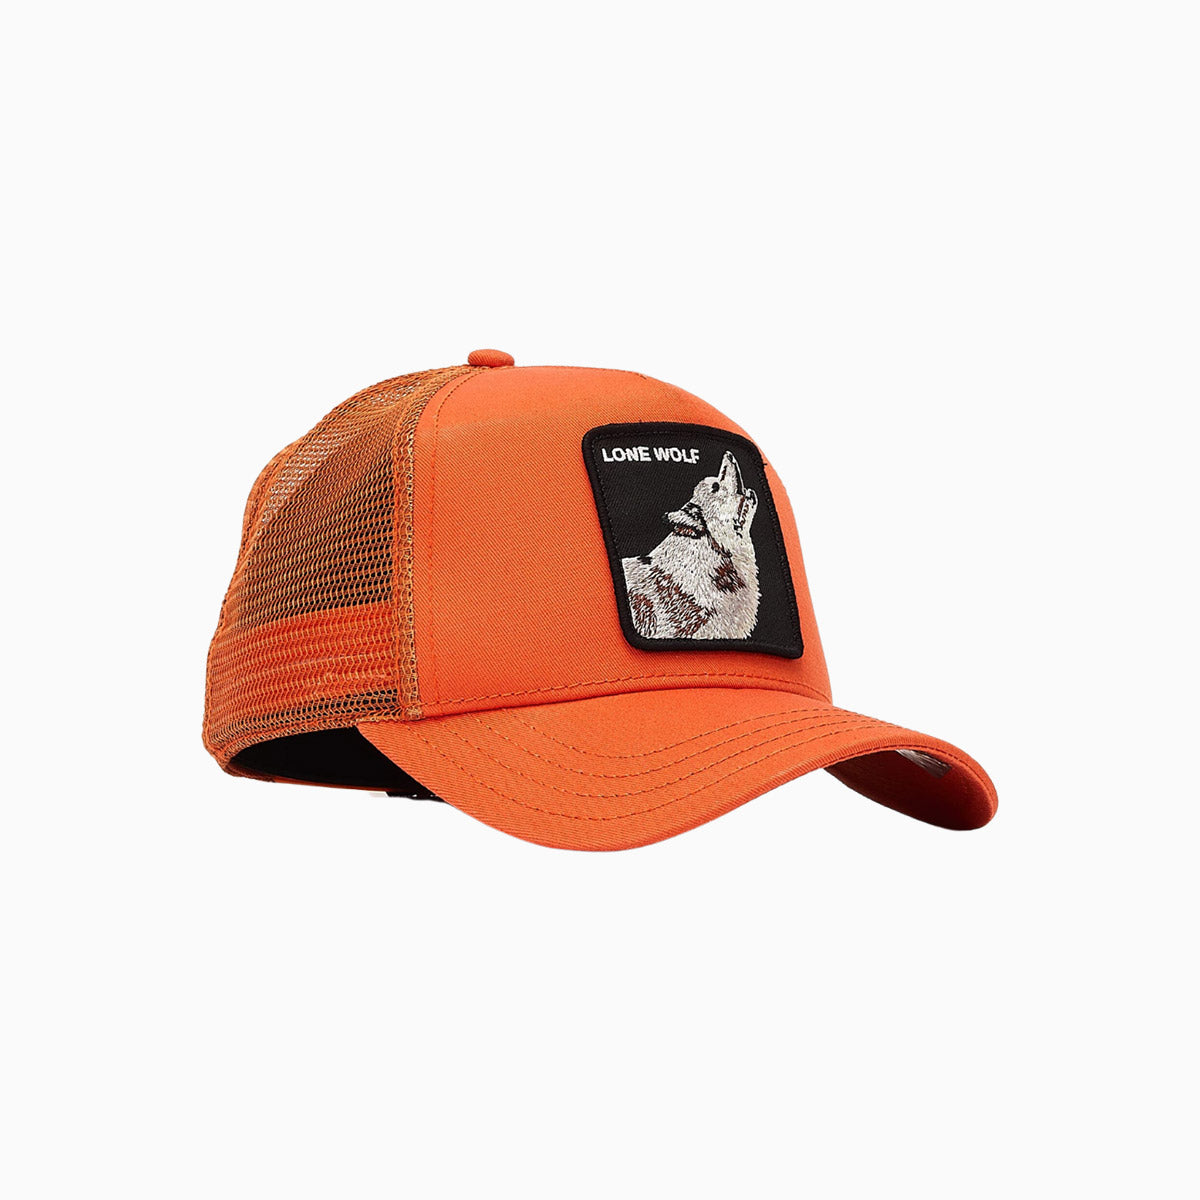 goorin-bros-the-lone-wolf-trucker-hat-101-0389-orange